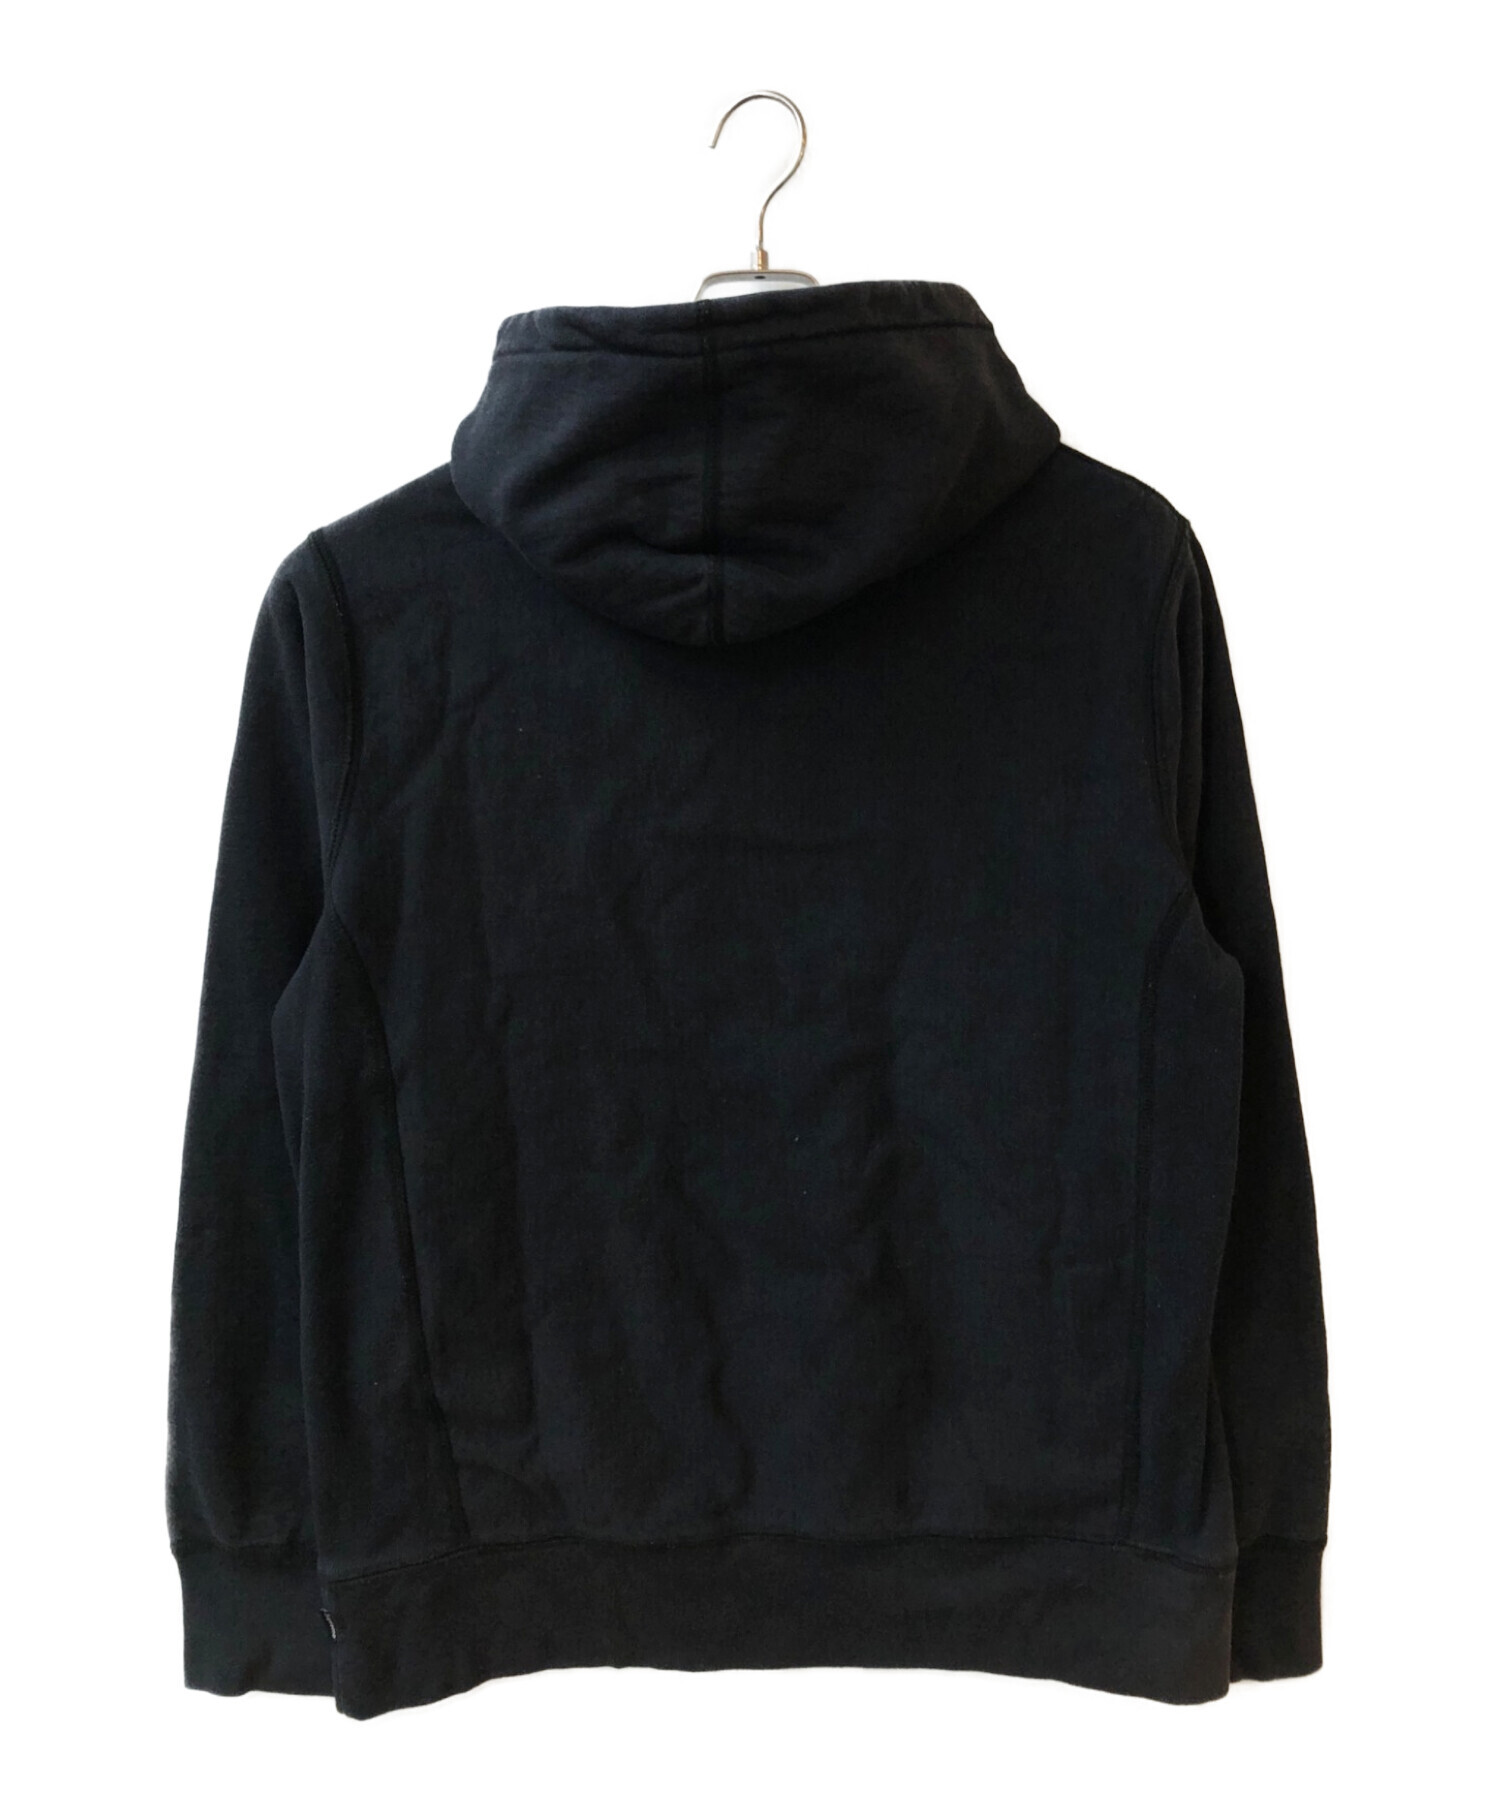 SUPREME (シュプリーム) Chenille Applique Hooded Sweatshirt ブラック サイズ:M